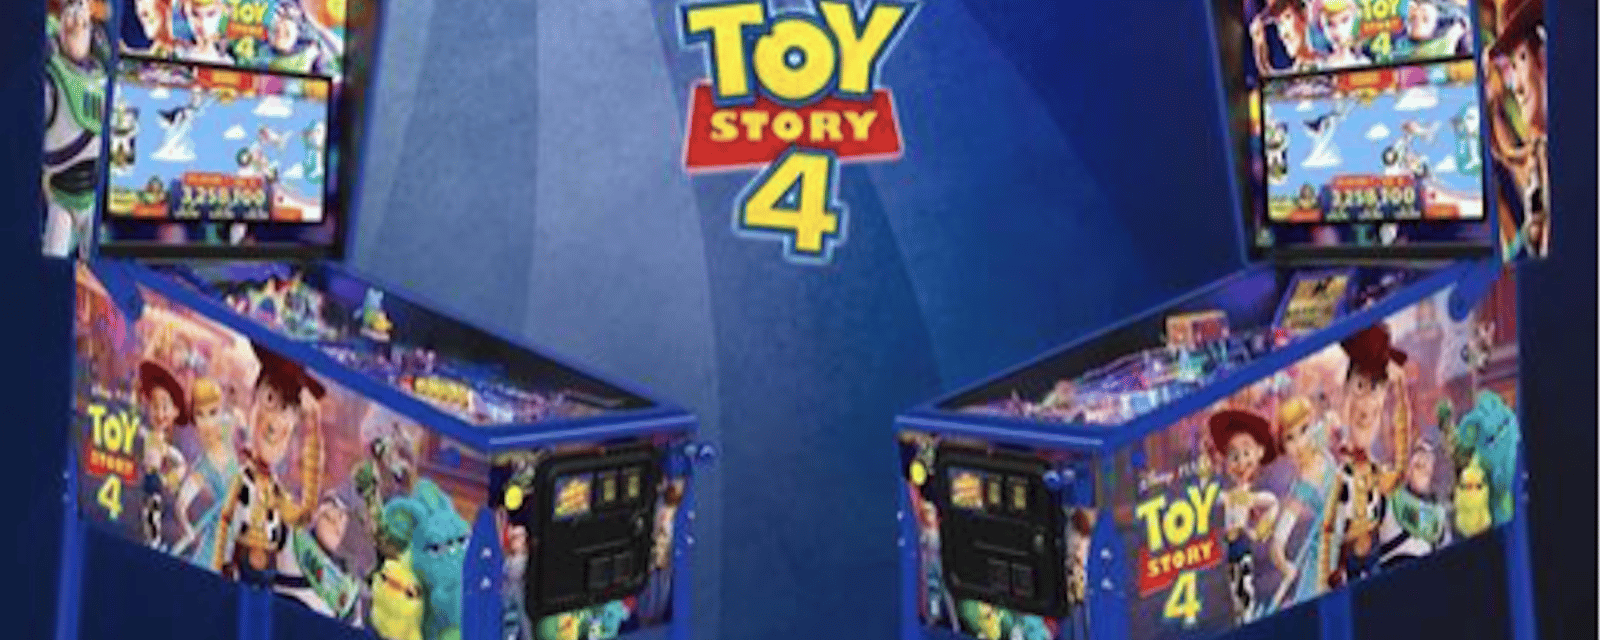 Deux flippers en édition limitée pour la sortie du nouveau film de Toy Story